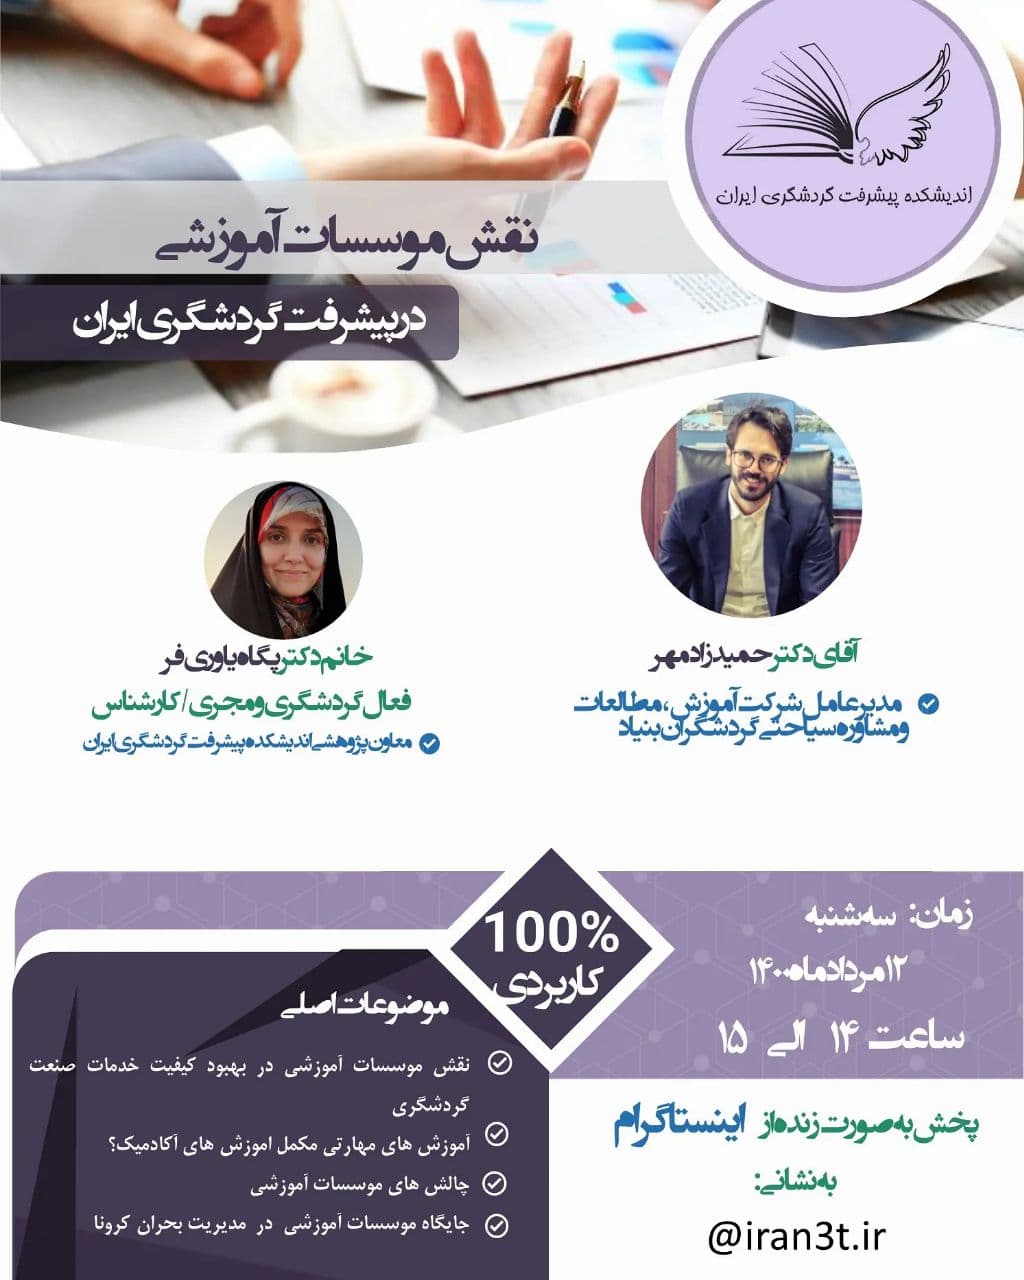 بررسی نقش موسسات آموزشی در پیشرفت گردشگری ایران